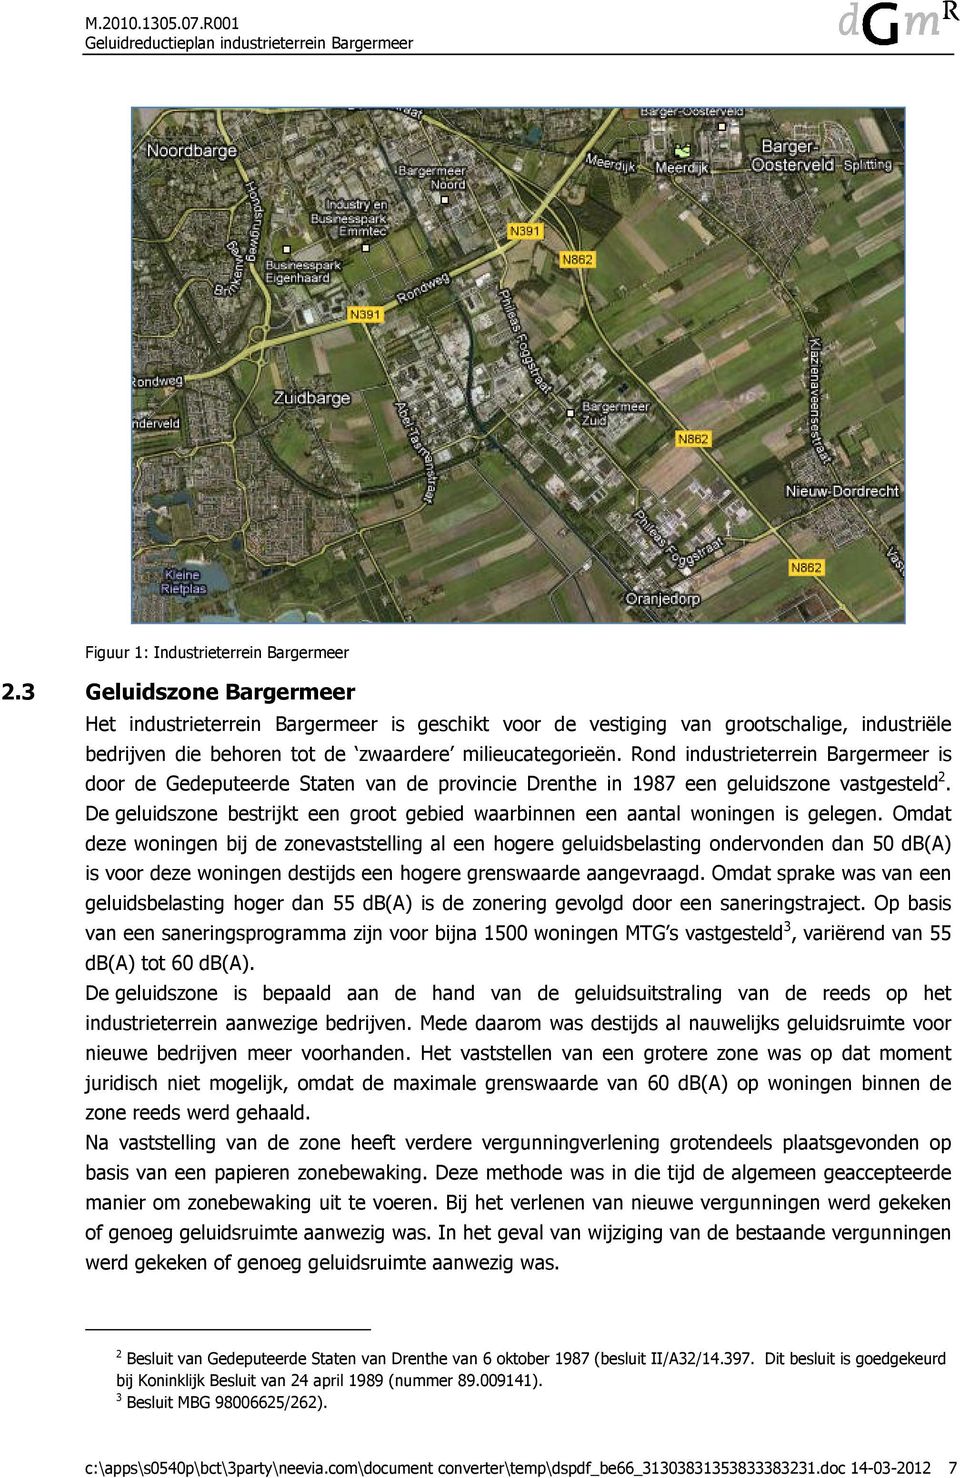 Rond industrieterrein Bargermeer is door de Gedeputeerde Staten van de provincie Drenthe in 1987 een geluidszone vastgesteld 2.